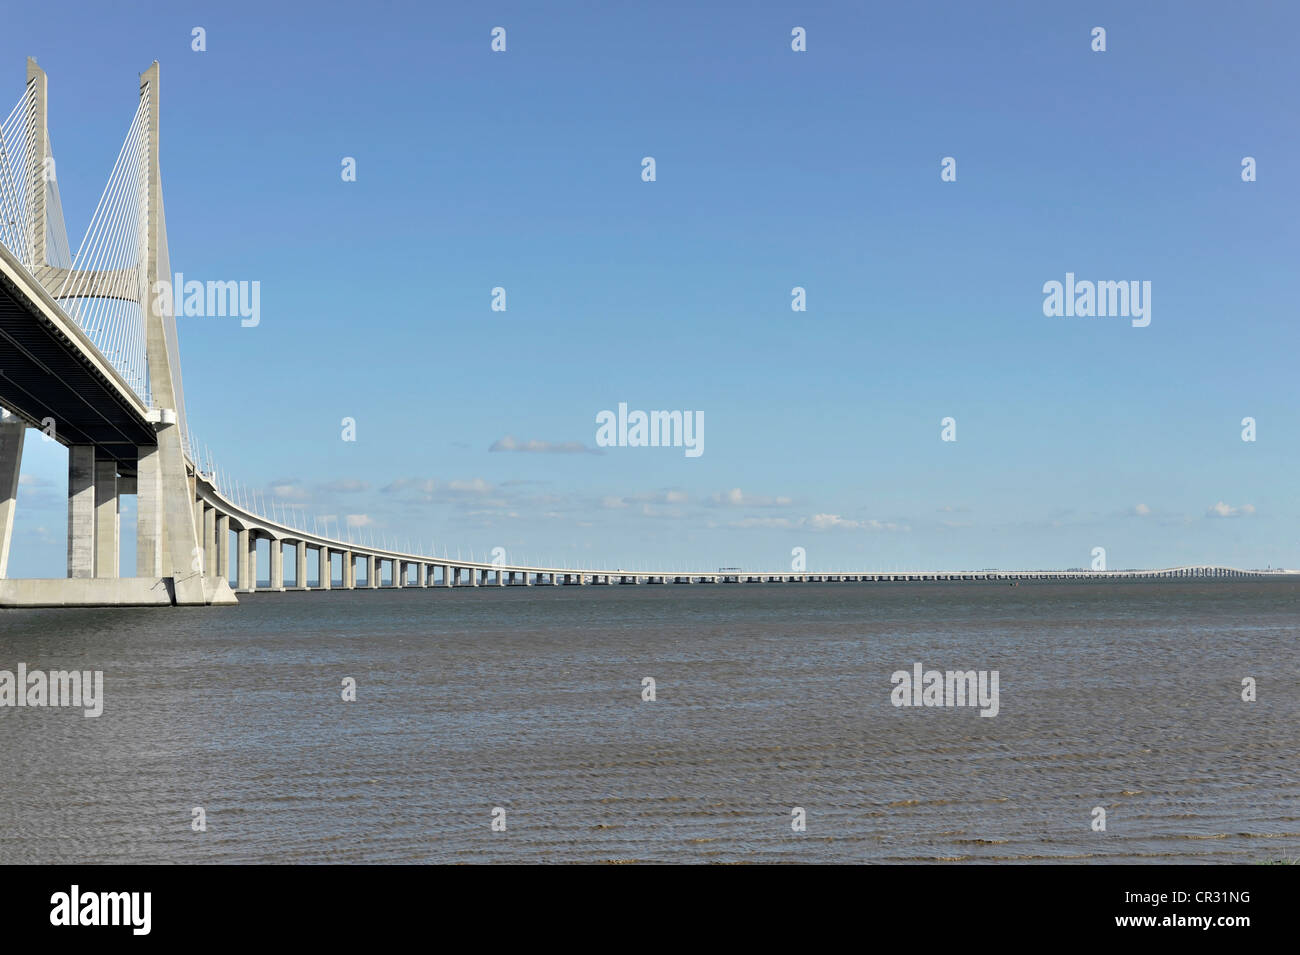 Dal ponte Vasco da Gama, Ponte Vasco da Gama, inizio della costruzione nel 1995, 17,2 km, Lisbona, Portogallo, Europa Foto Stock